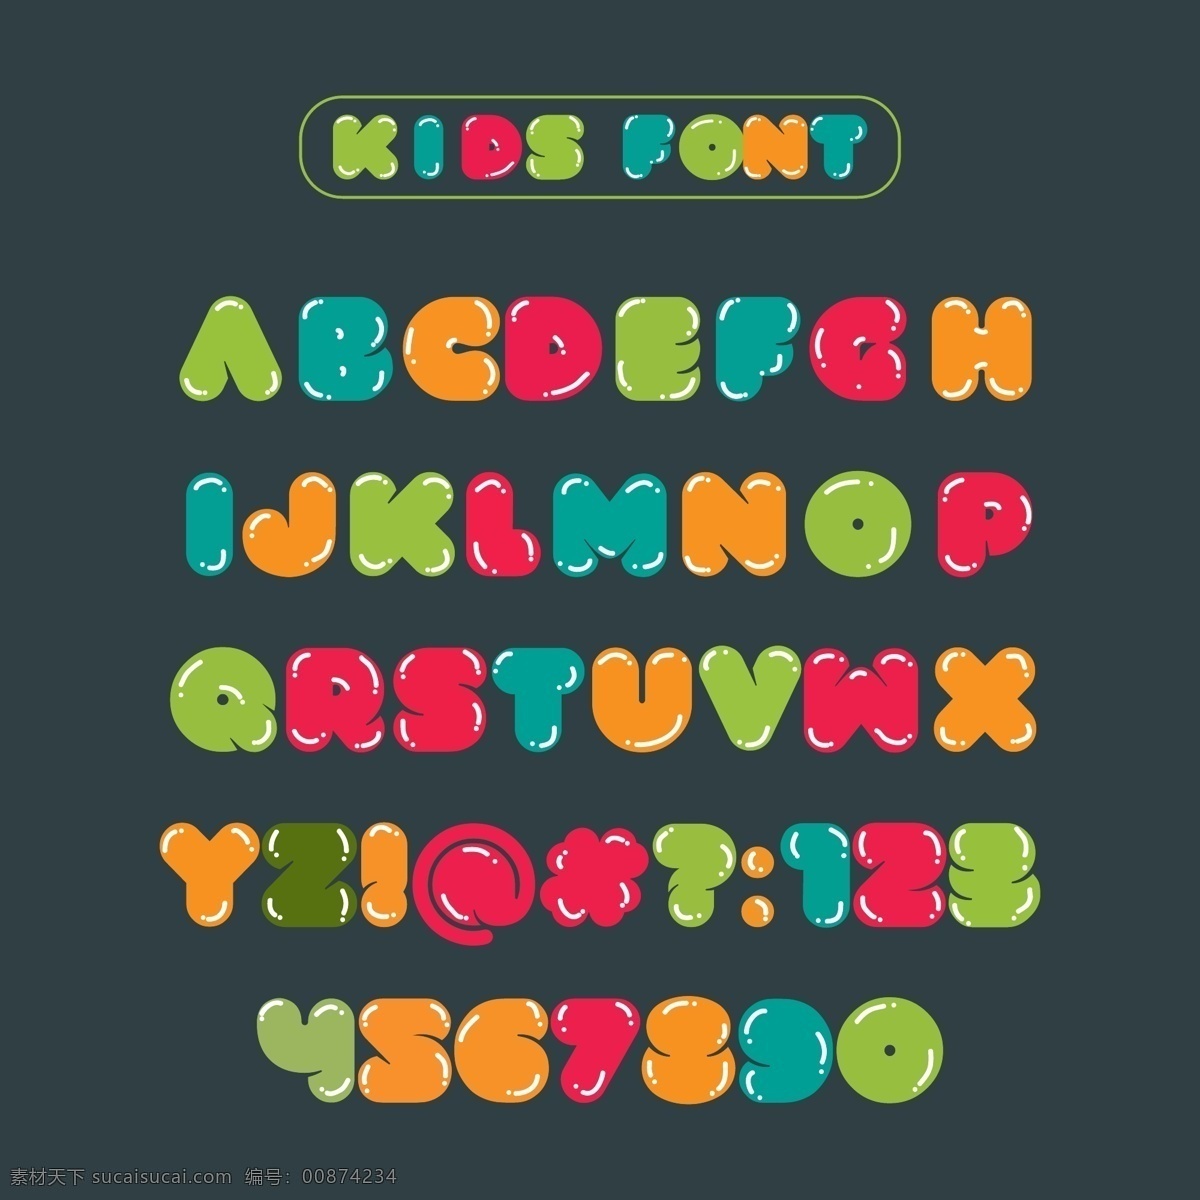 卡通数字字母 26个字母 手绘字母 矢量字母 字母插画 可爱字母 活泼字母 创意字母 艺术字母 简洁字母 简约字母 现代字母 时尚字母 紫色渐变字母 对比色背景 对比色字母 彩色字母 图案字母 折纸字母 折纸数字 儿童字母 质感字母 高光字母 数字字母 标志图标 其他图标